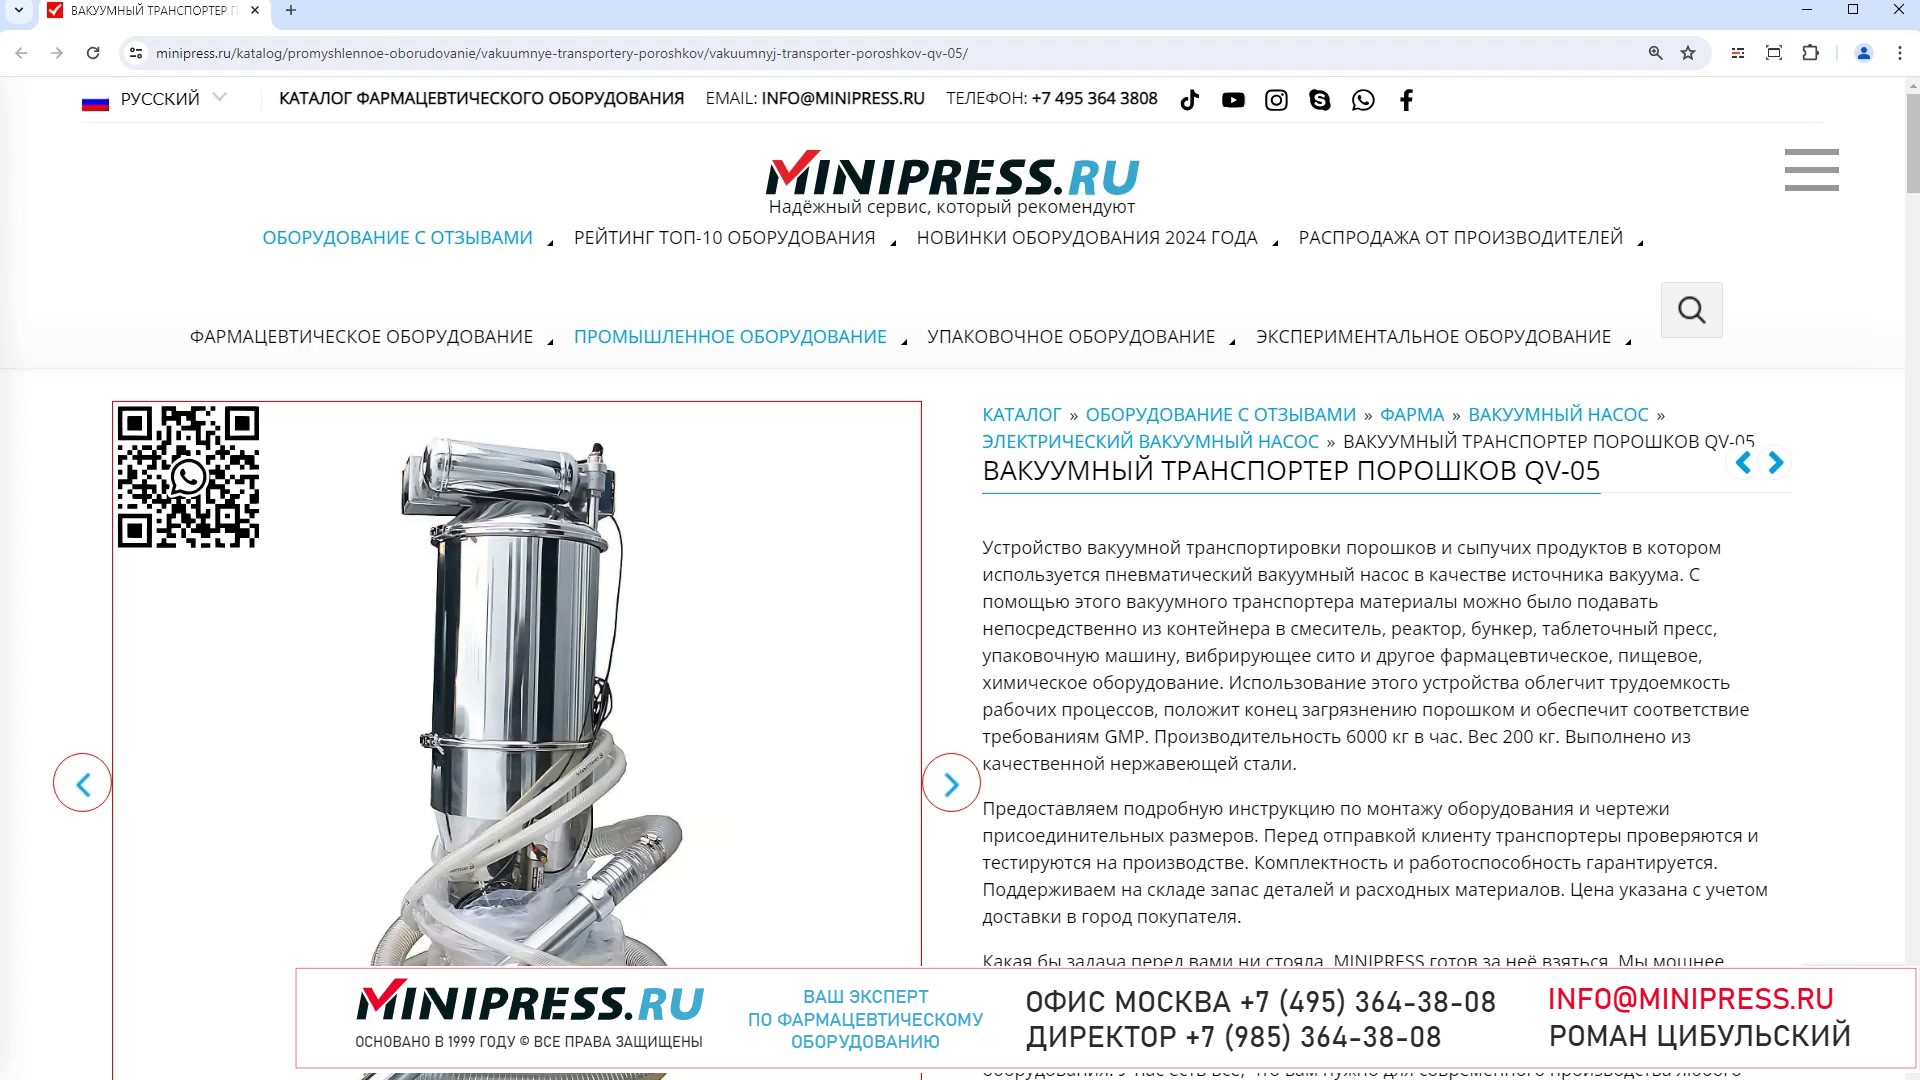 Minipress.ru Вакуумный транспортер порошков QV-05